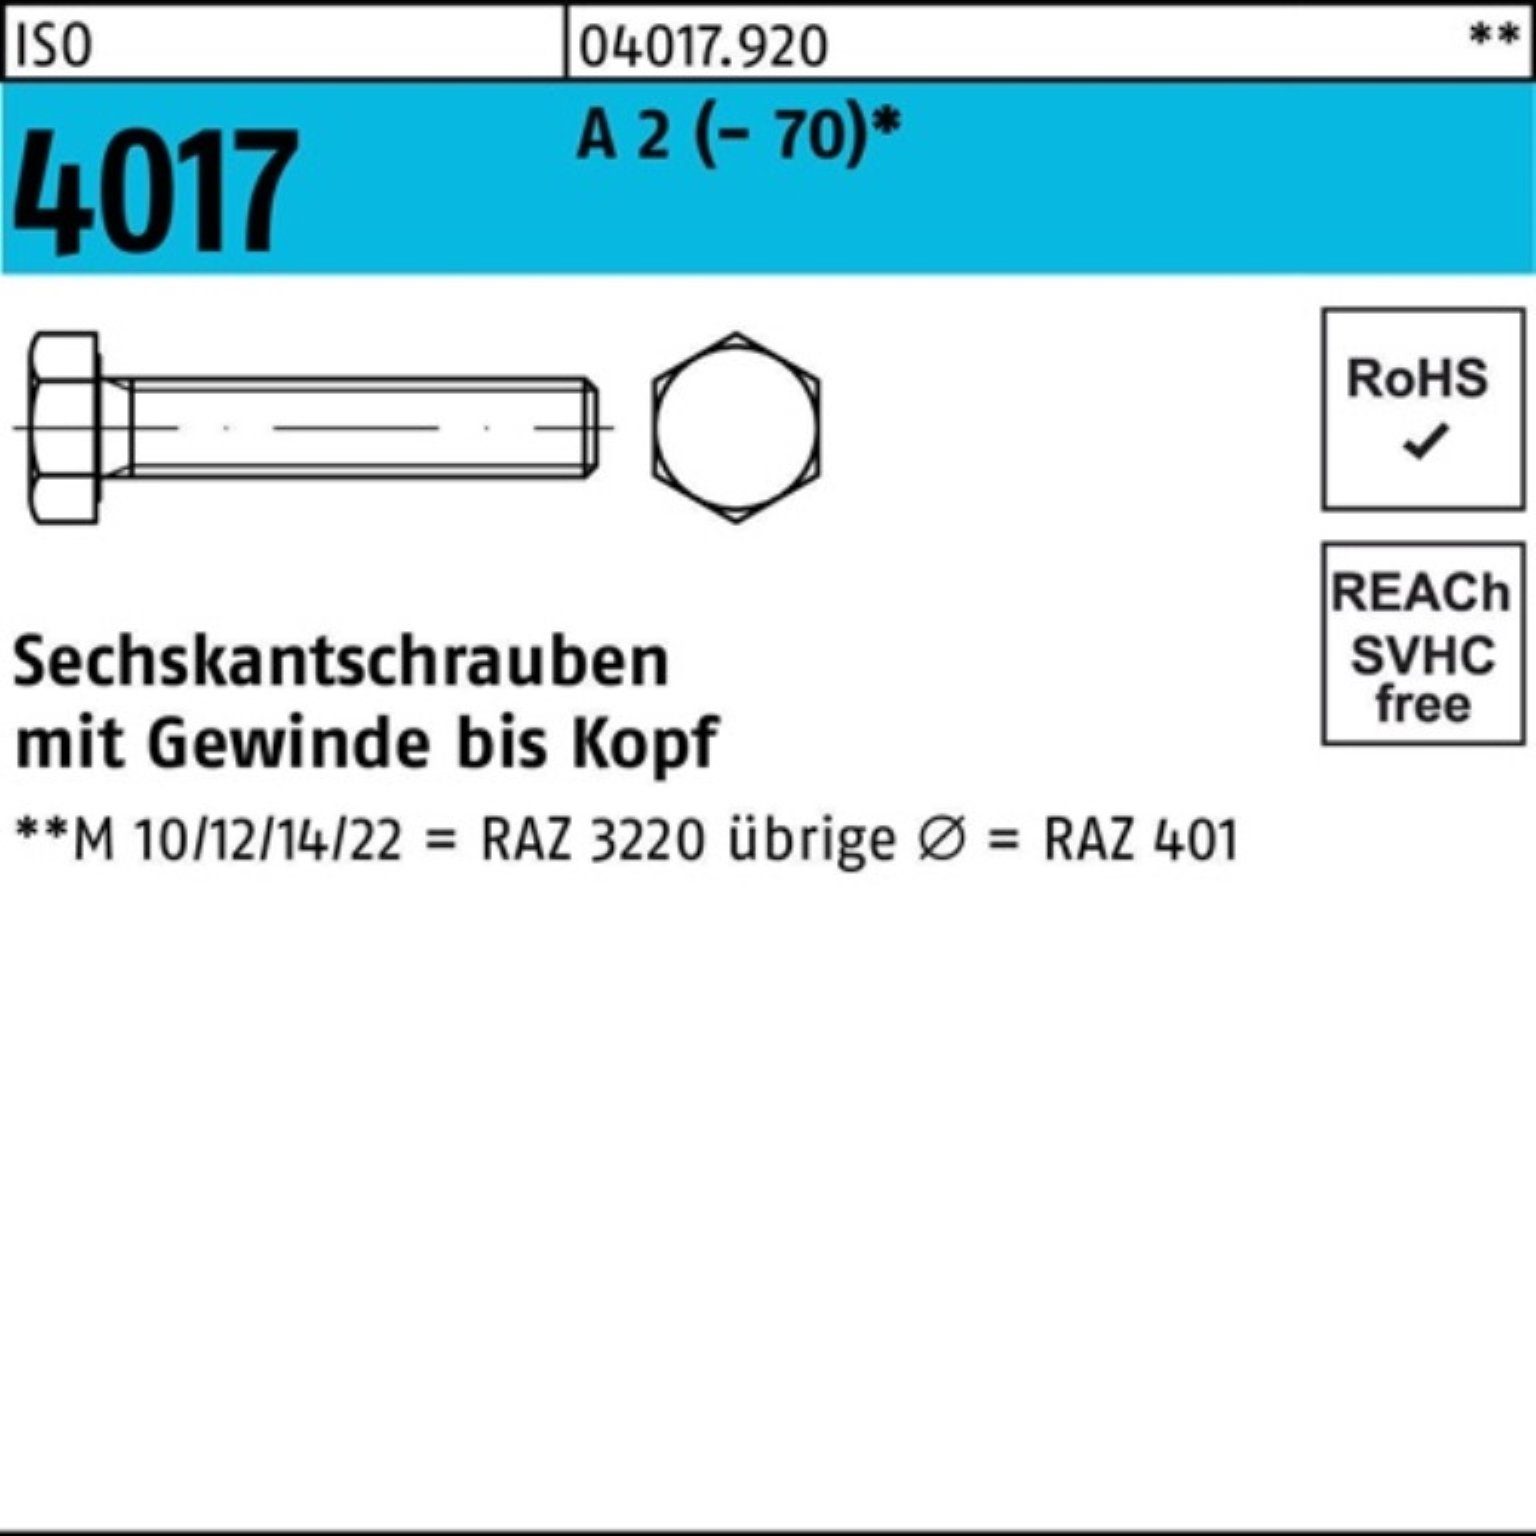 Bufab Sechskantschraube 100er Pack Sechskantschraube ISO 4017 VG M10x 50 A 2 (70) 100 Stück